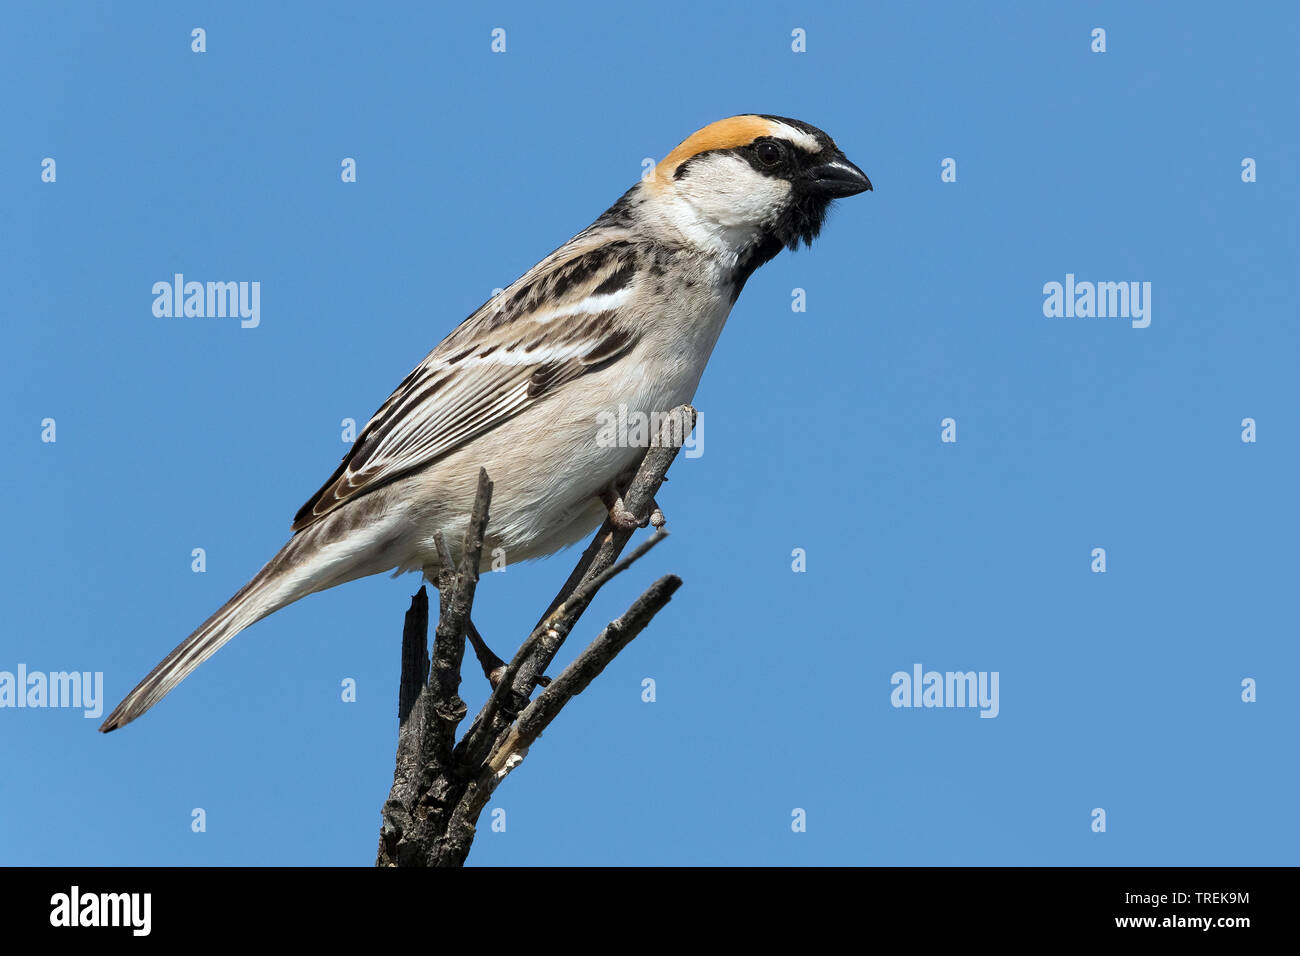 Saxaul sparrow (Passer ammodendri nigricans nigricans), passant, perché sur une branche, le Kazakhstan, Almaty Banque D'Images